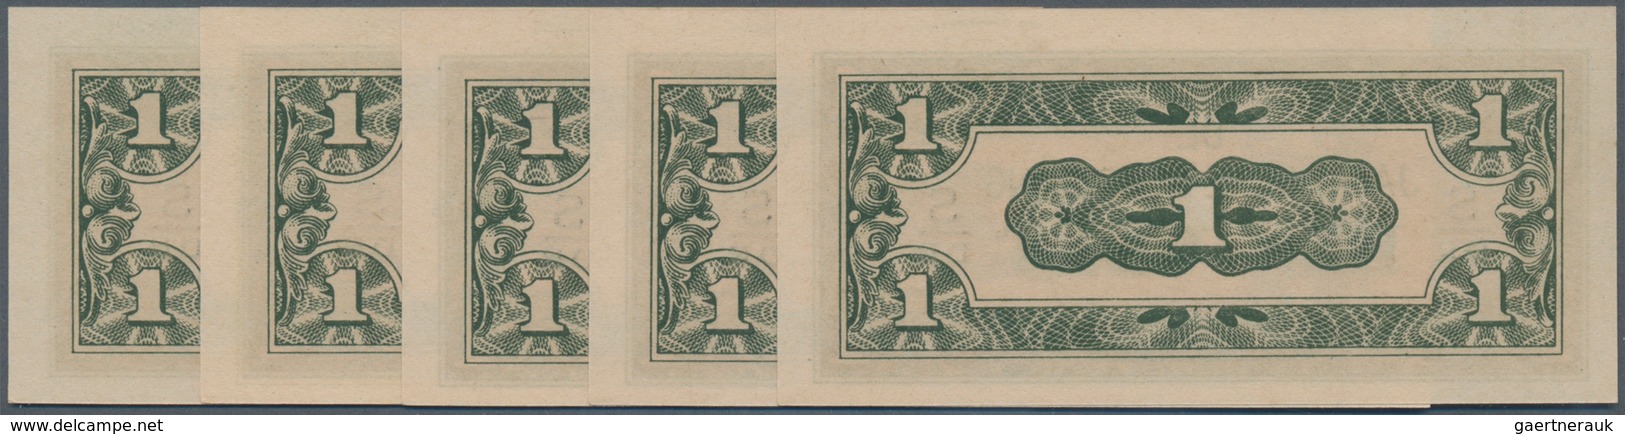 Netherlands Indies / Niederländisch Indien: De Japansche Regeering Set With 10 Banknotes 1 Cent ND(1 - Niederländisch-Indien